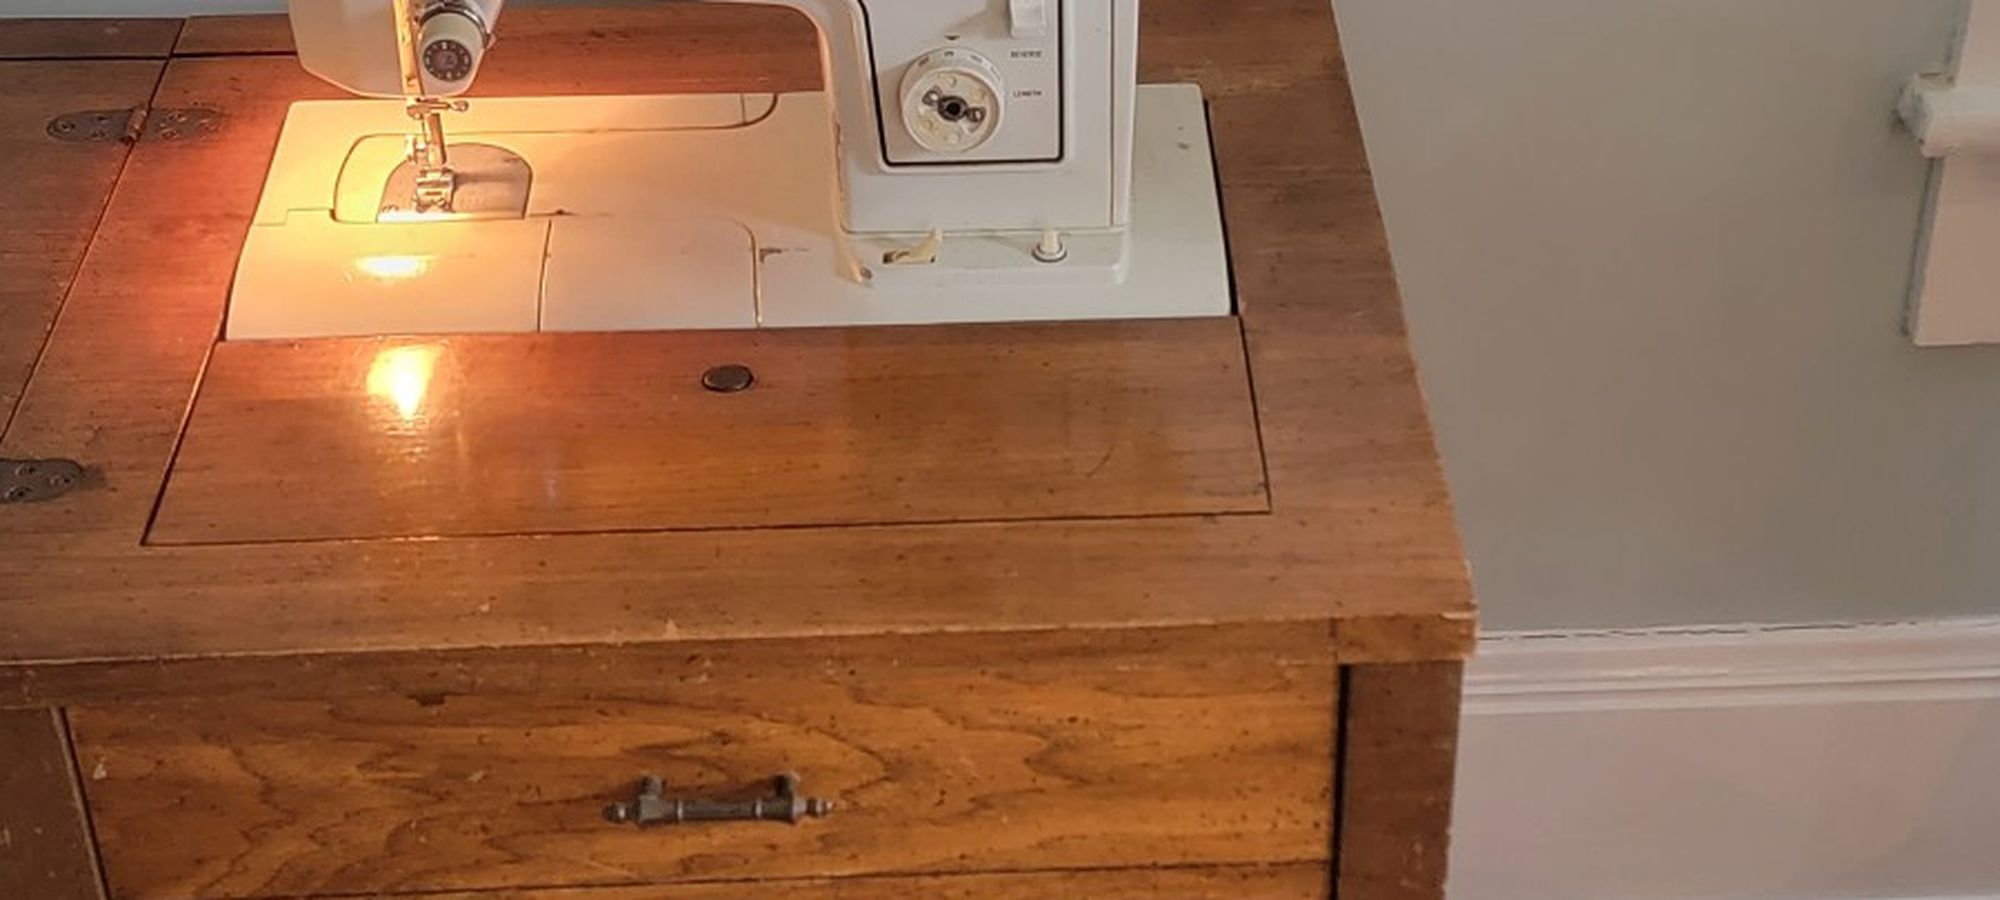 Kenmore Sewing Machine 30$